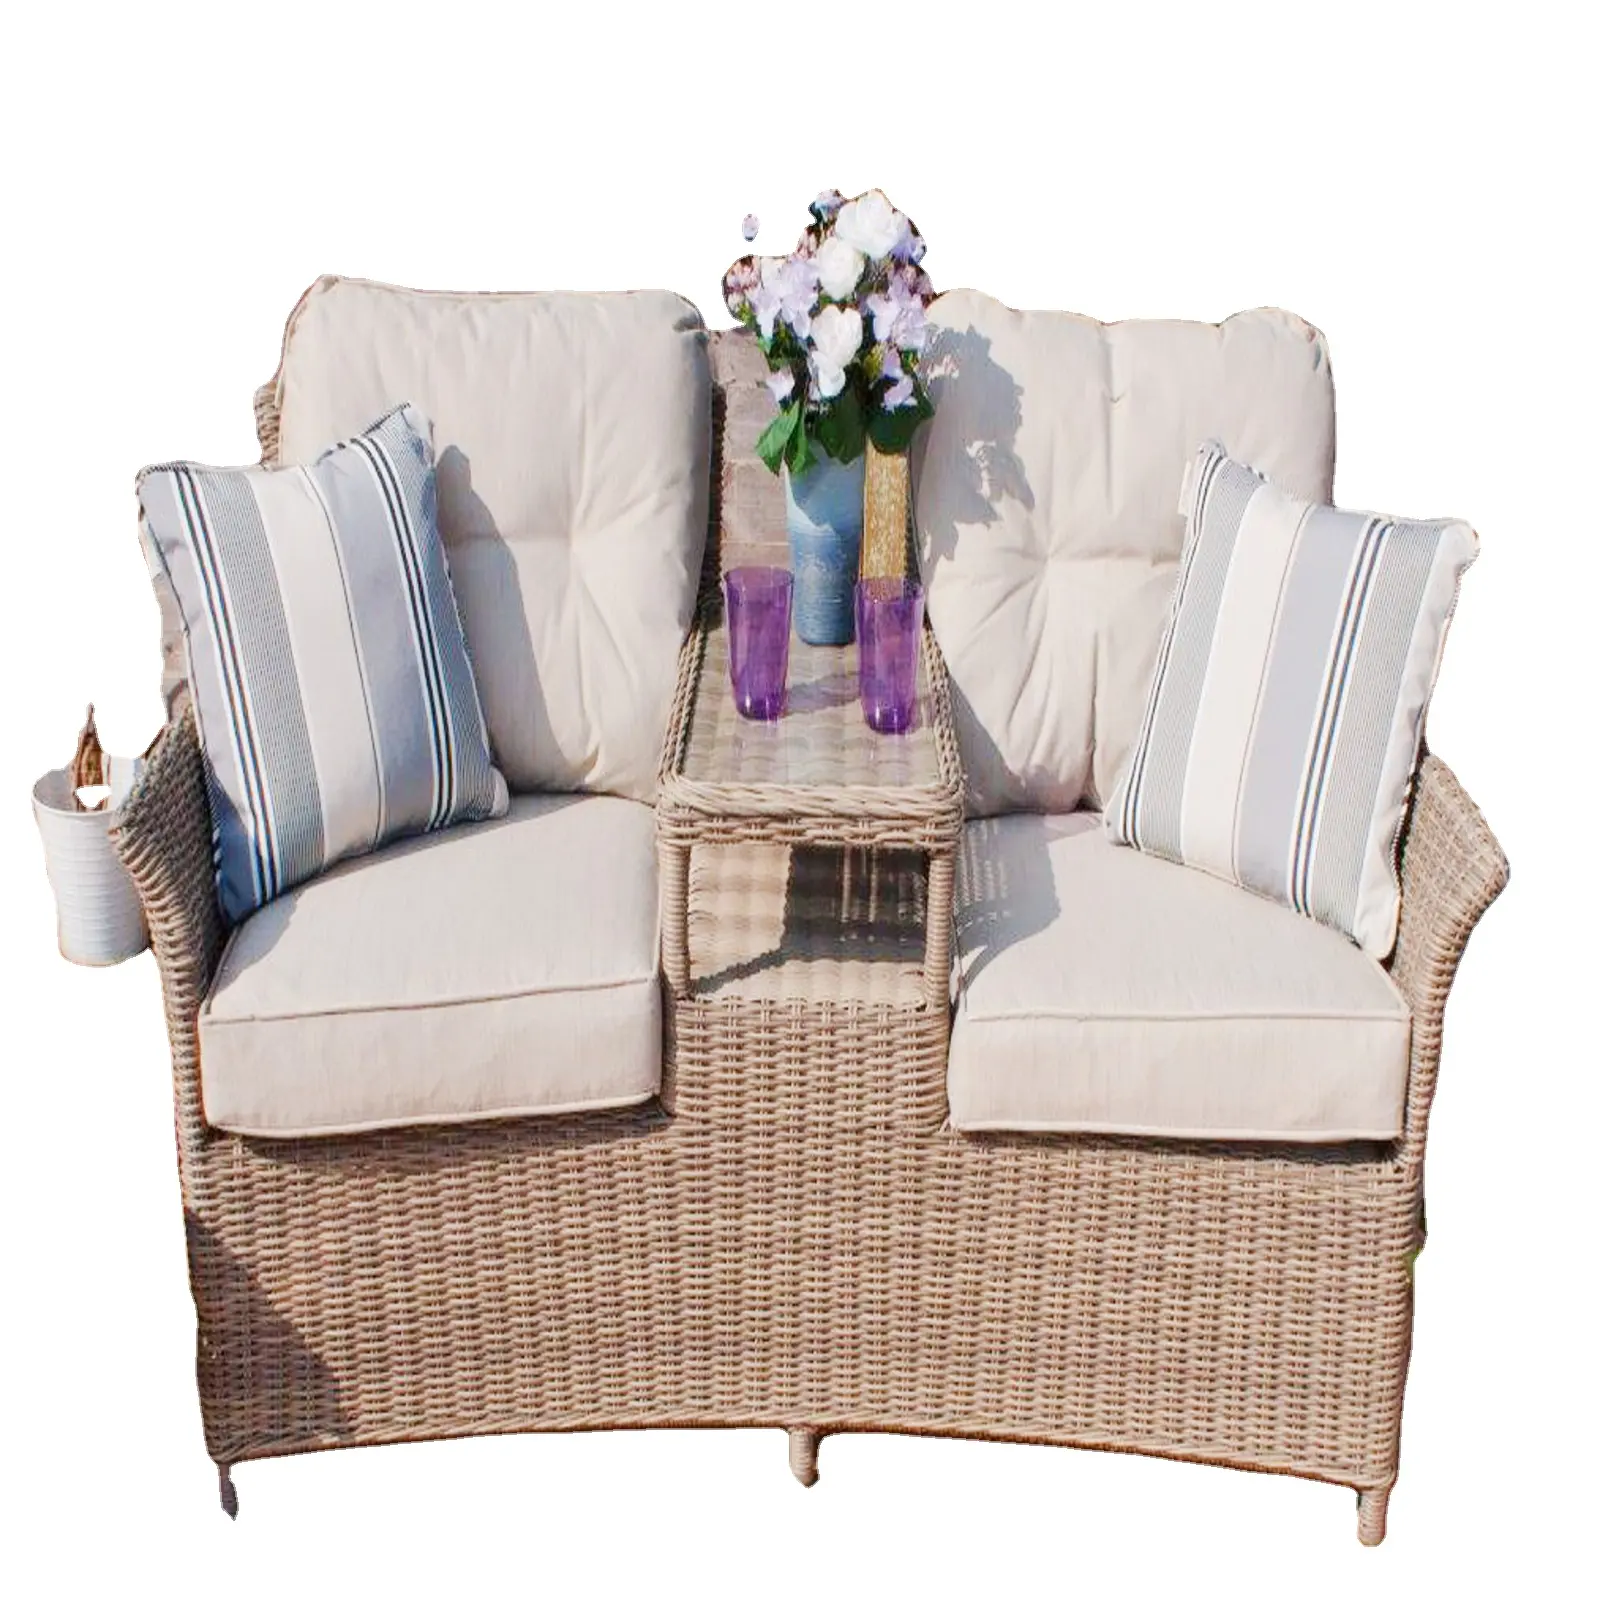 Расслабьтесь стильно и комфортно, с садовыми наборами бистро из мебели DL/из высококачественного материала PE